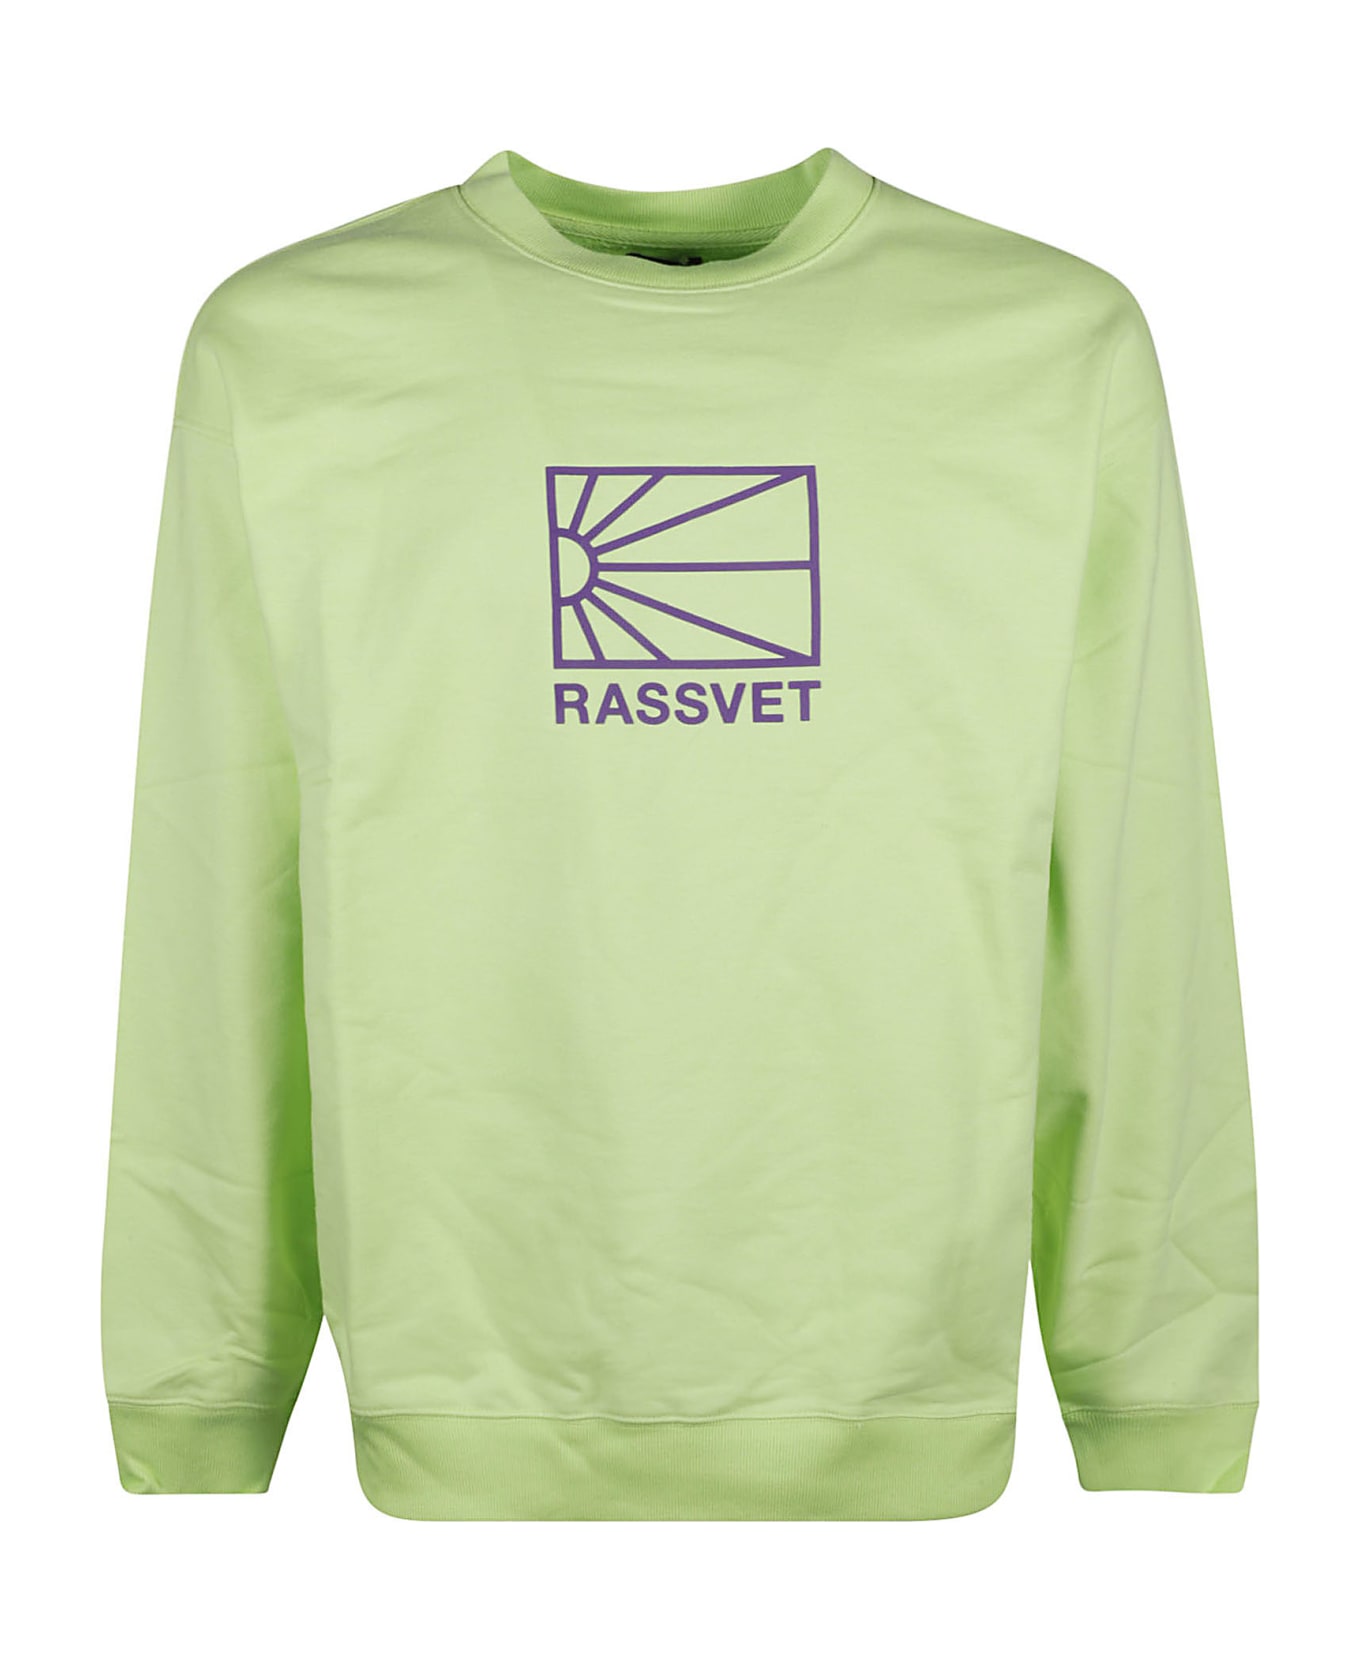 PACCBET Printed Sweatshirt - Green